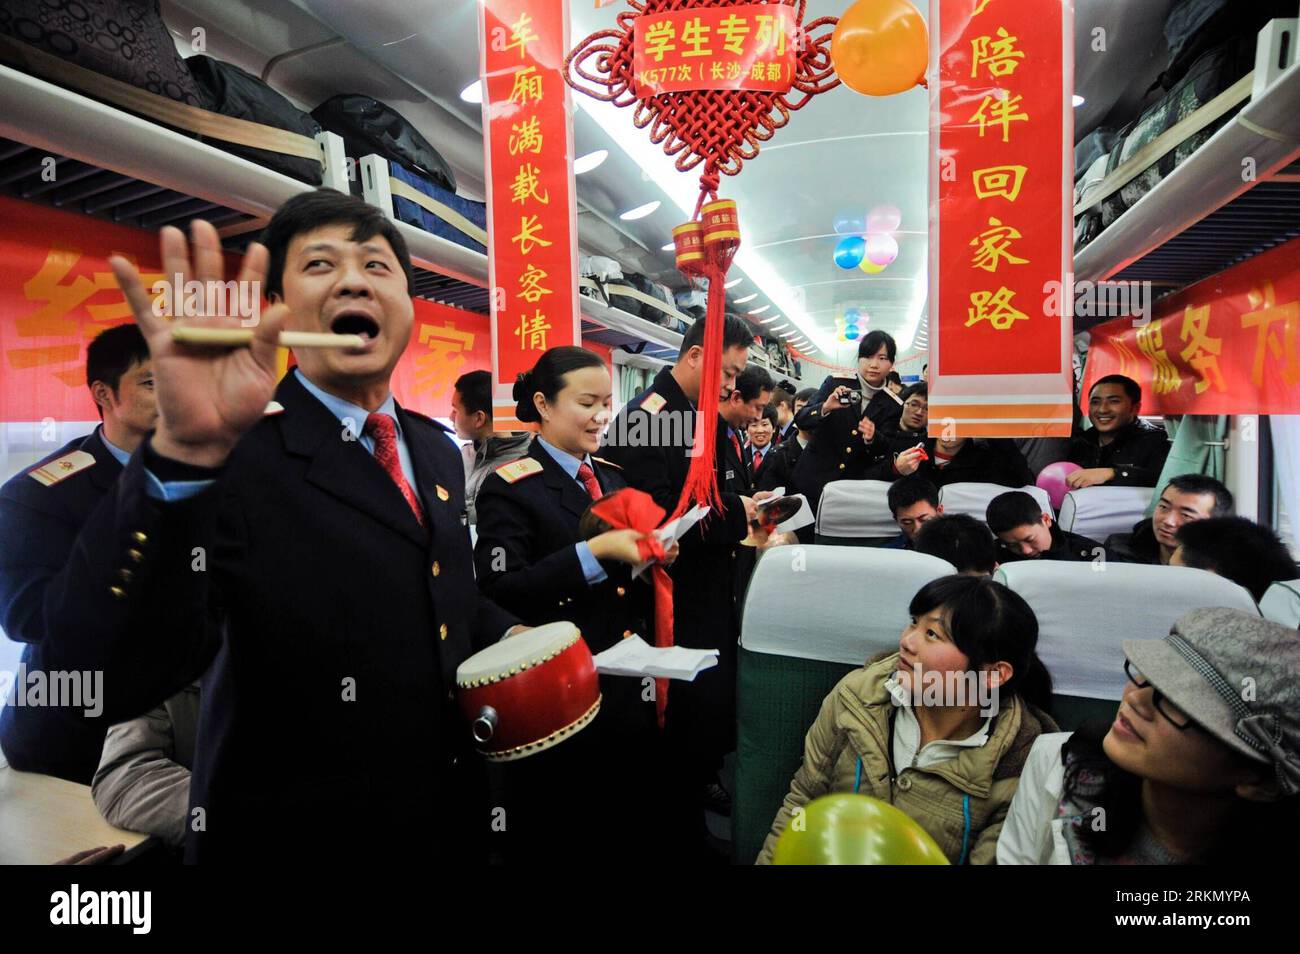 Bildnummer: 56882224 Datum: 13.01.2012 Copyright: imago/Xinhua (120113) -- CHANGSHA, 13 gennaio 2012 (Xinhua) -- i membri dell'equipaggio del treno mettono in scena uno spettacolo per divertire i passanti sul treno K577 che viaggia da Changsha della Cina centrale a Chengdu della Cina sud-occidentale, il 13 gennaio 2012. Quest'anno la corsa ai trasporti nella stagione del Festival di Primavera è iniziata l'8 gennaio e terminerà il 16 febbraio, secondo il Ministero delle Ferrovie. Il Festival di Primavera, o Capodanno lunare cinese, che cade il 23 gennaio di quest'anno, è la festa cinese più importante per le riunioni di famiglia. La festa di Primavera è quindi sempre Foto Stock